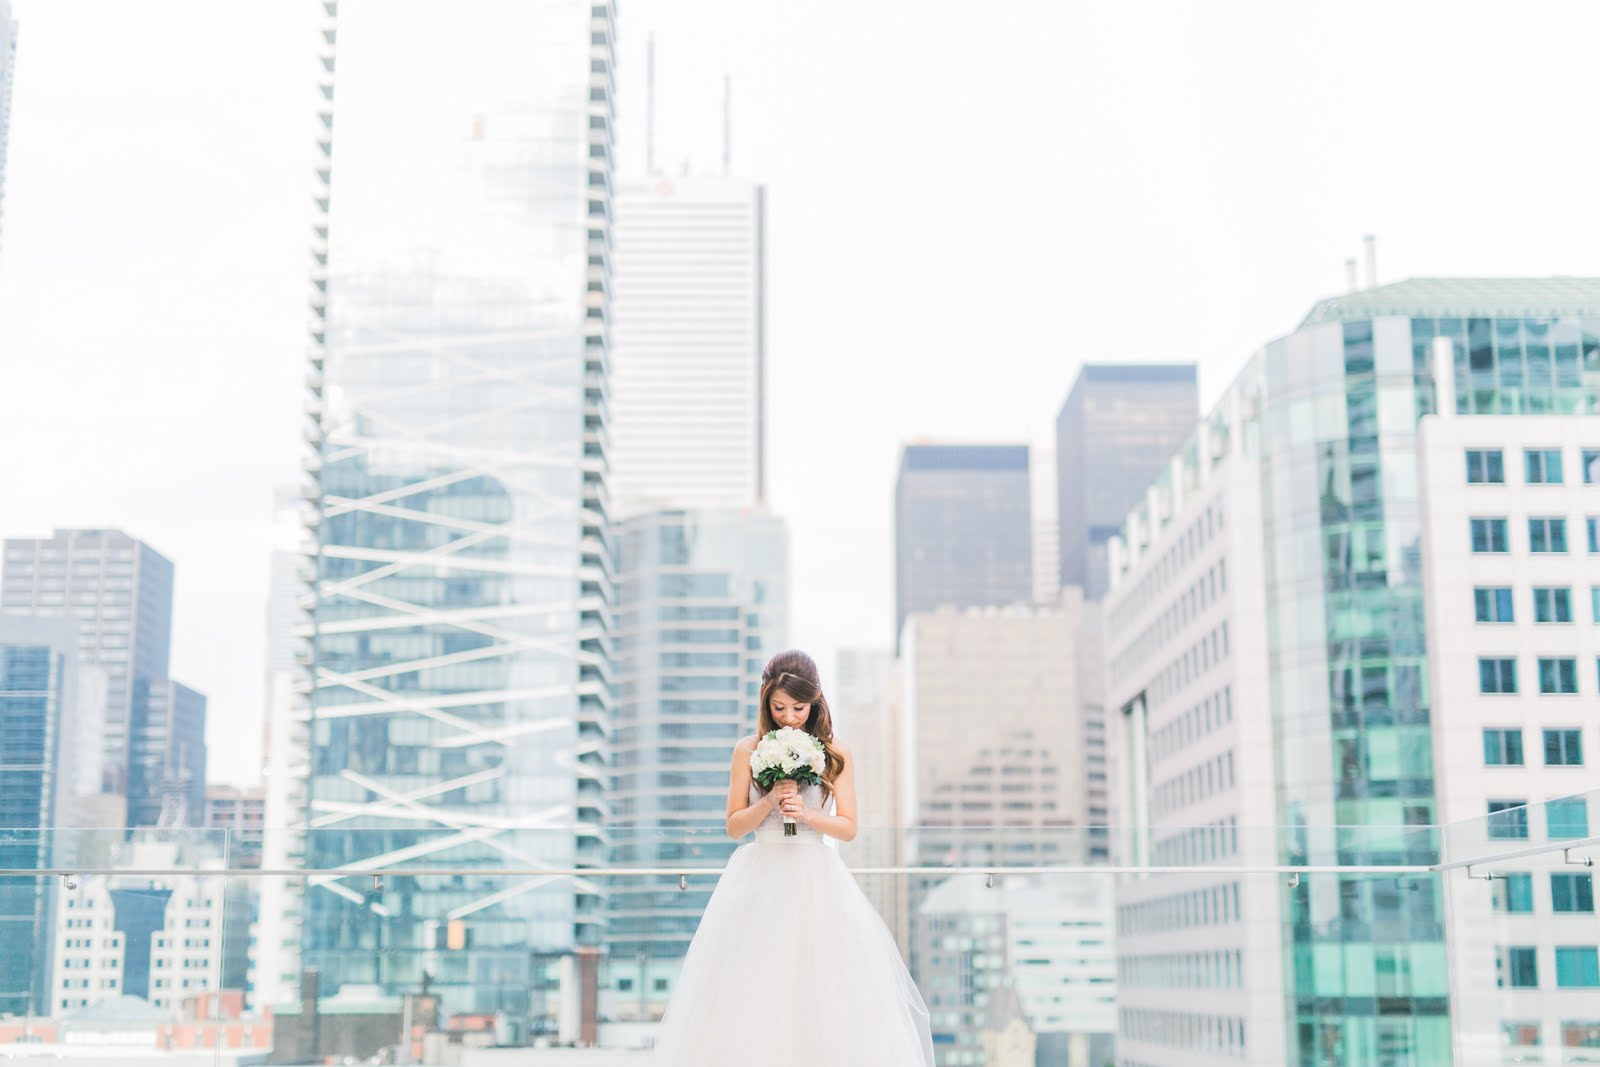 Bride & Bouquet & City View